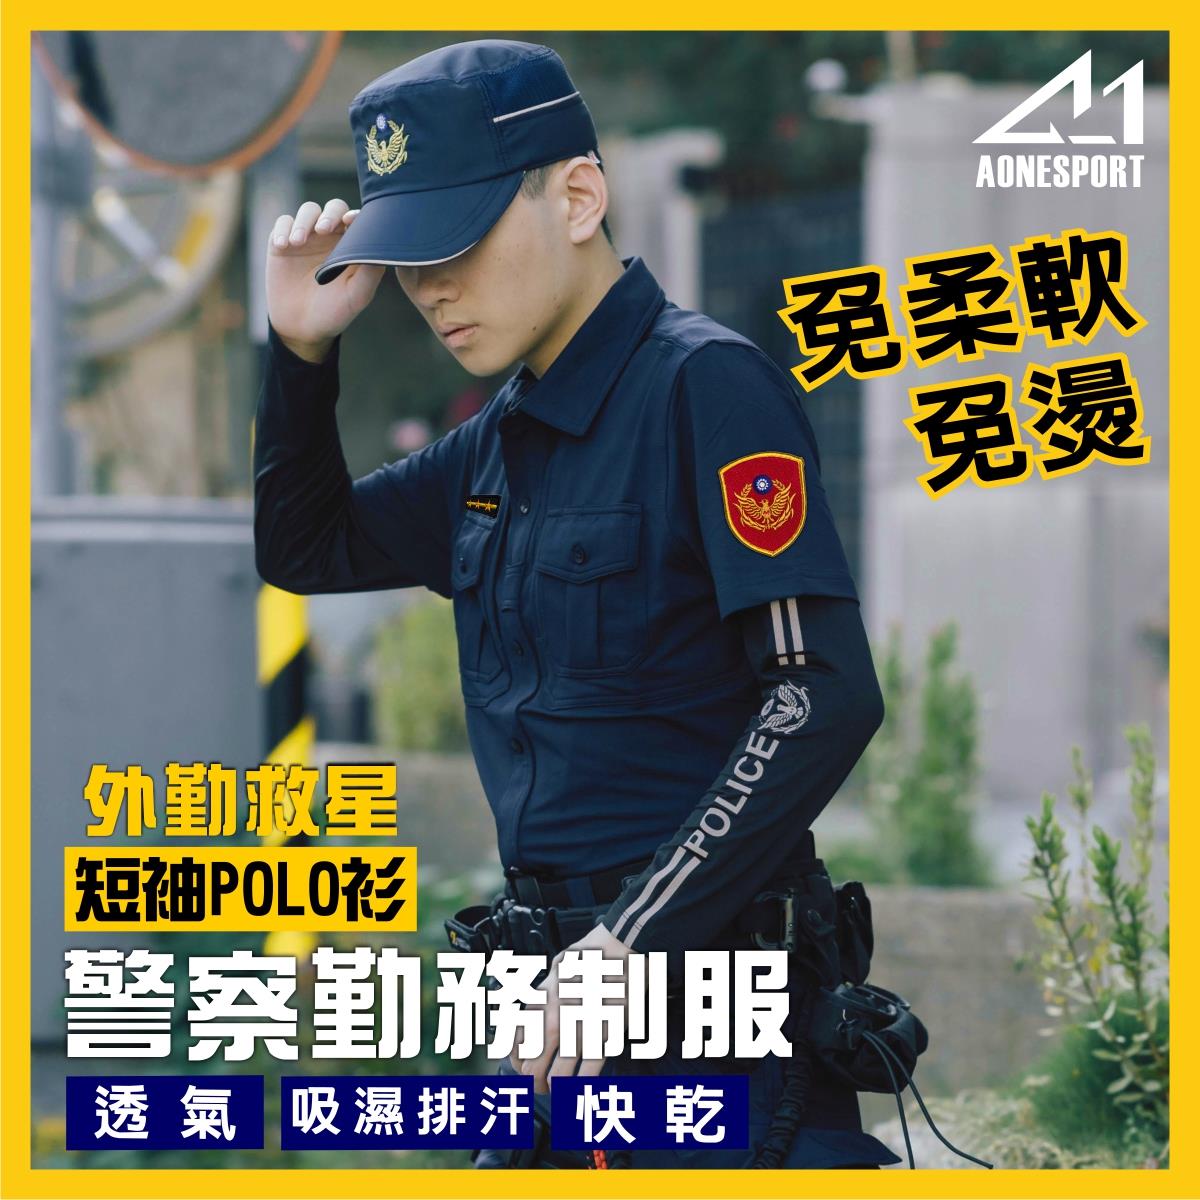 警察制服POLO衫-82047-三件套組,佳豐有限公司